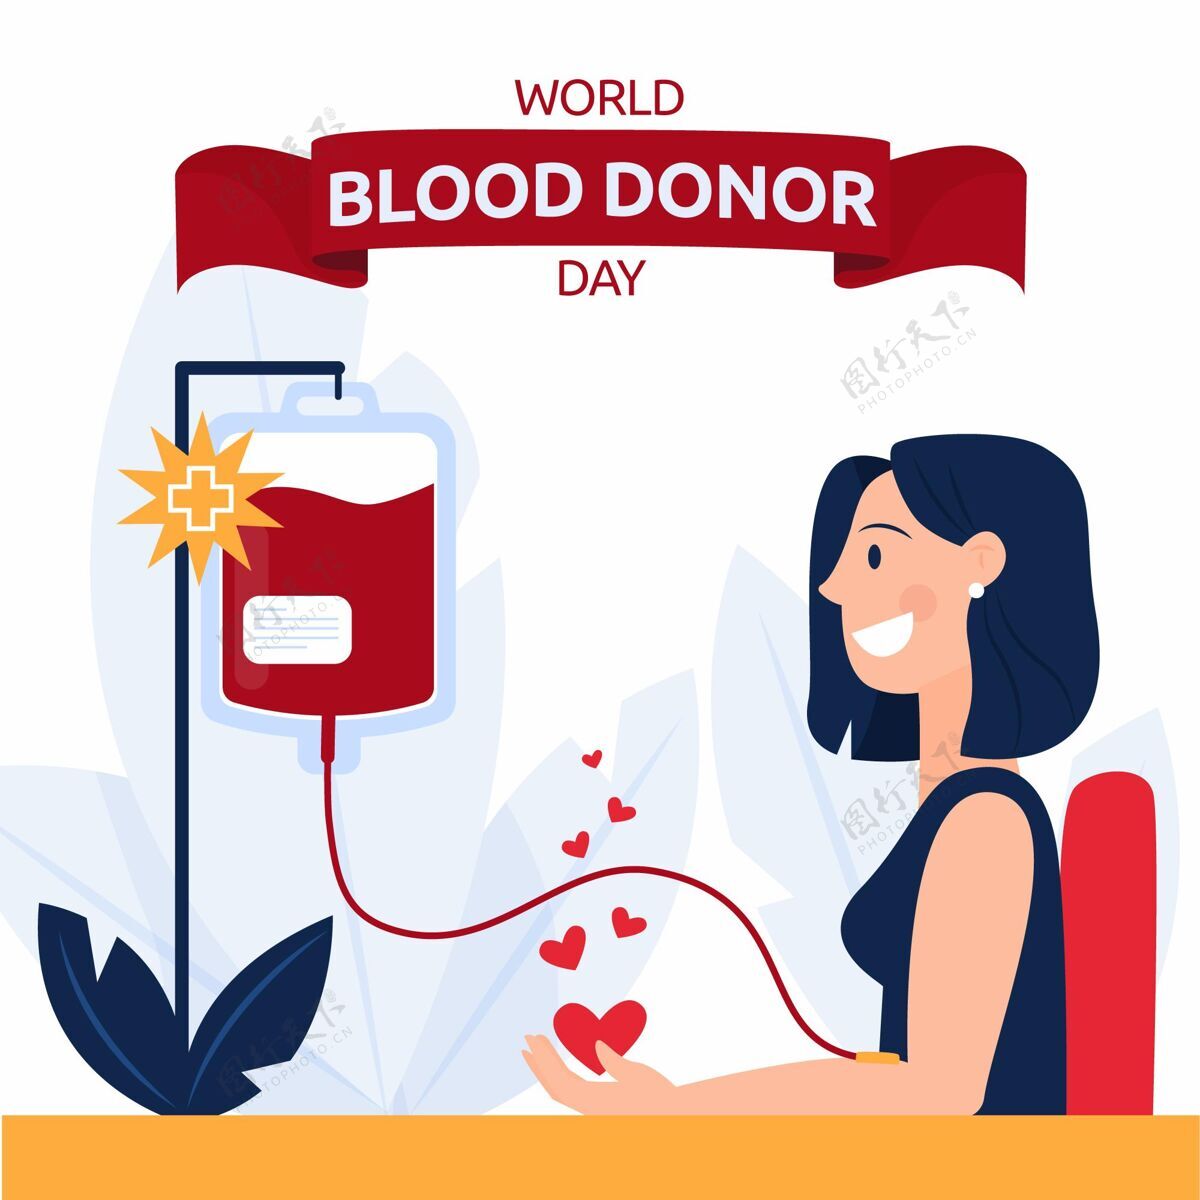 平面设计有机平板世界献血者日插画拯救生命有机平面世界献血者日